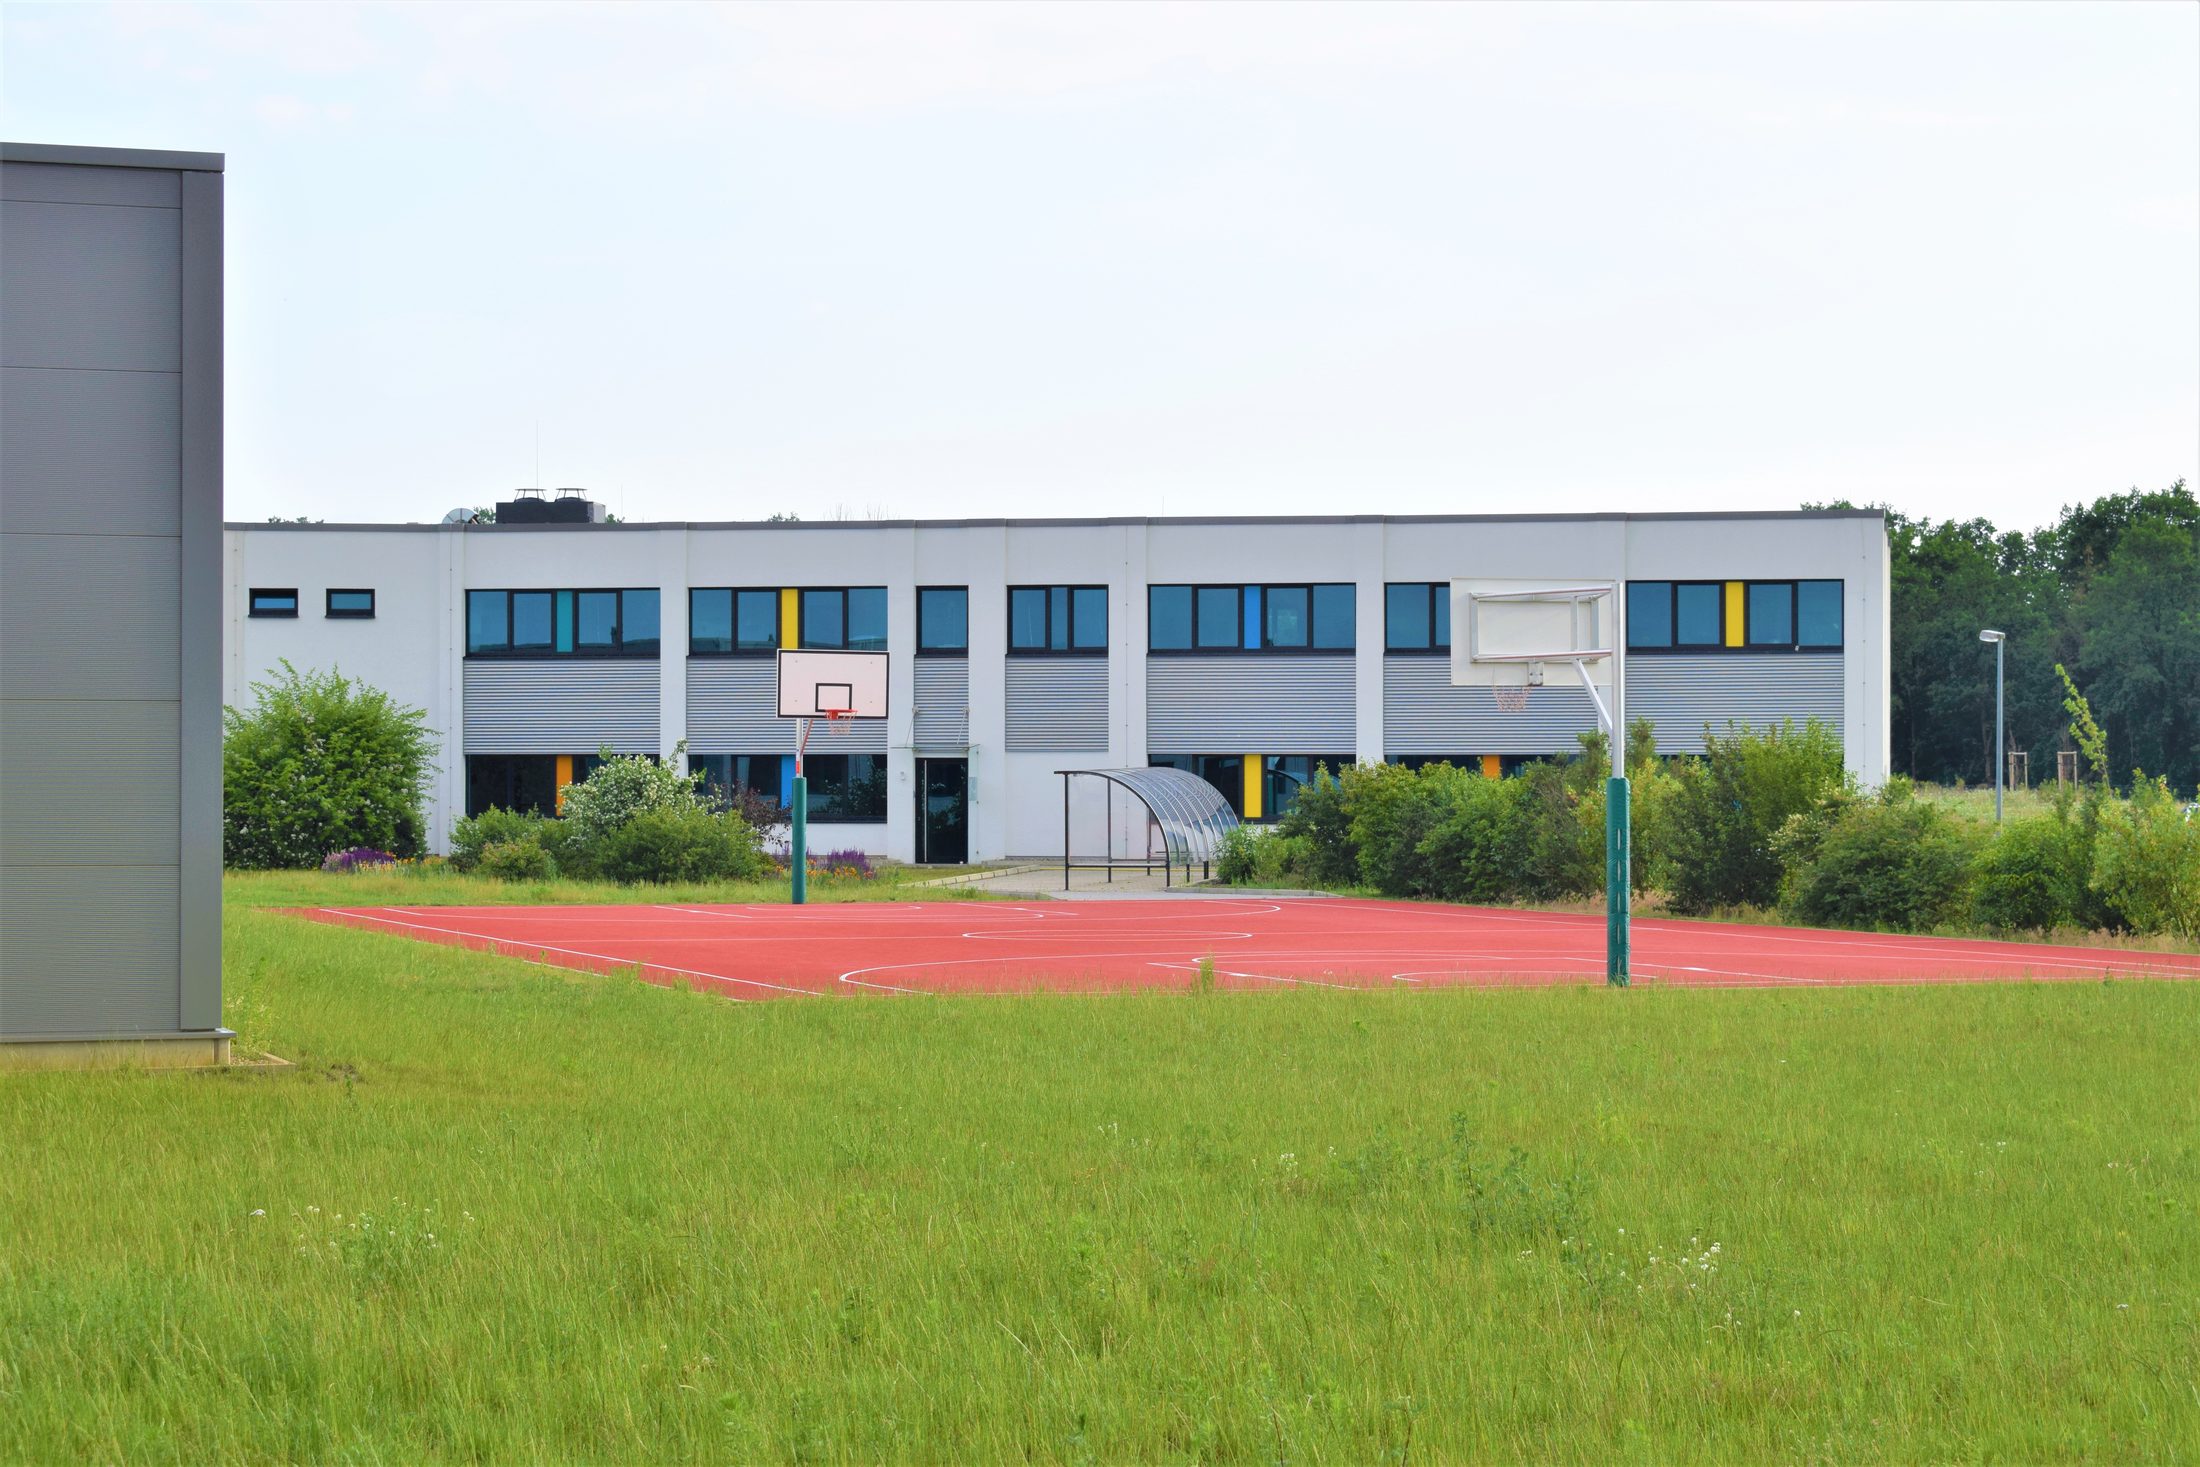 Sportlich: Für die rund 80 Mitarbeiter in Braunschweig steht auf dem Simtec-Gelände ein eigenes Outdoor-Basketballfeld zur Verfügung. (Wird bei Klick vergrößert)